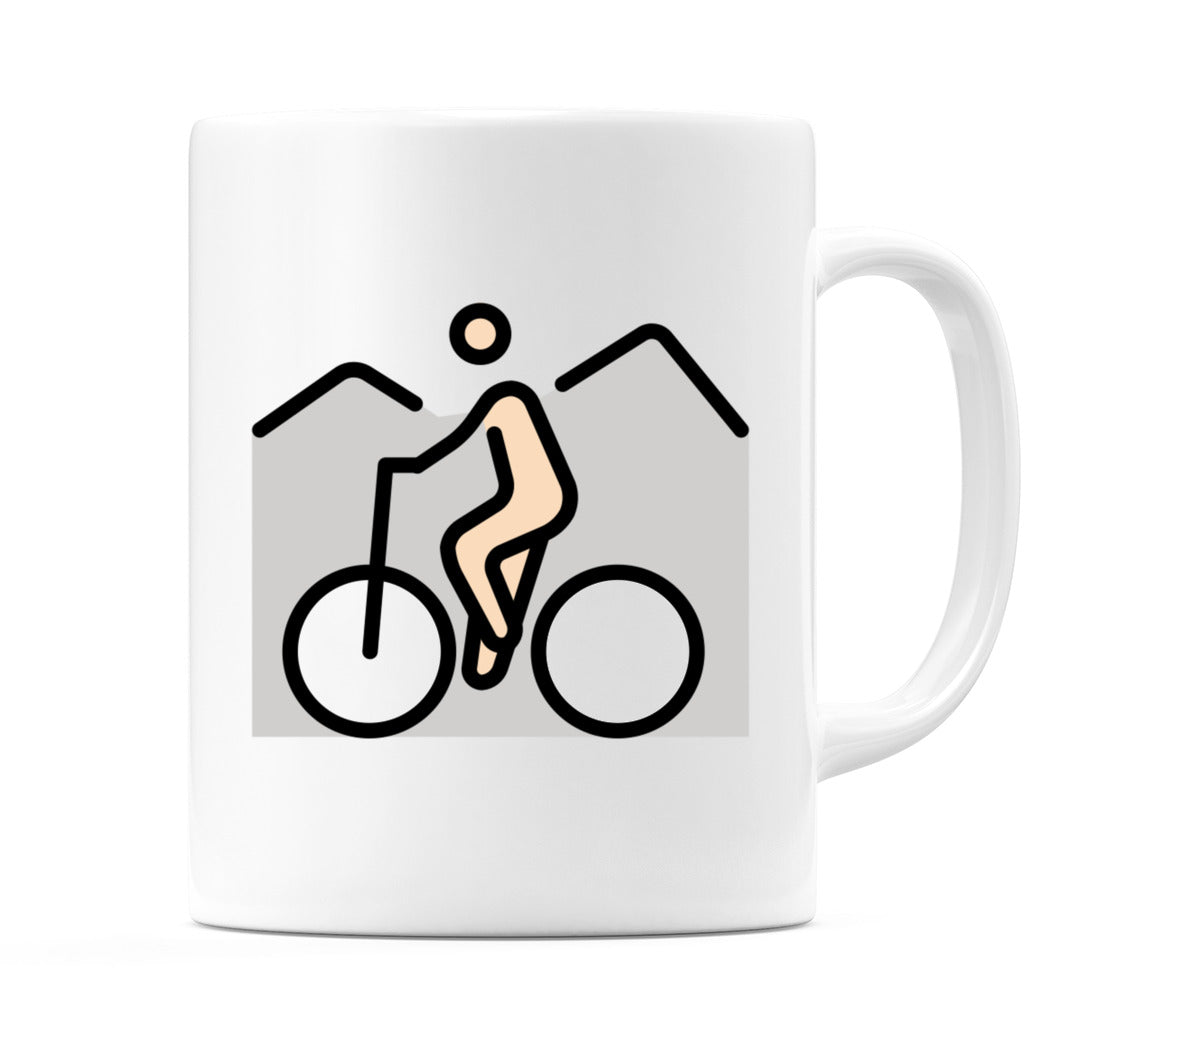 Person Mountain Biking: Light Skin Tone Emoji Mug